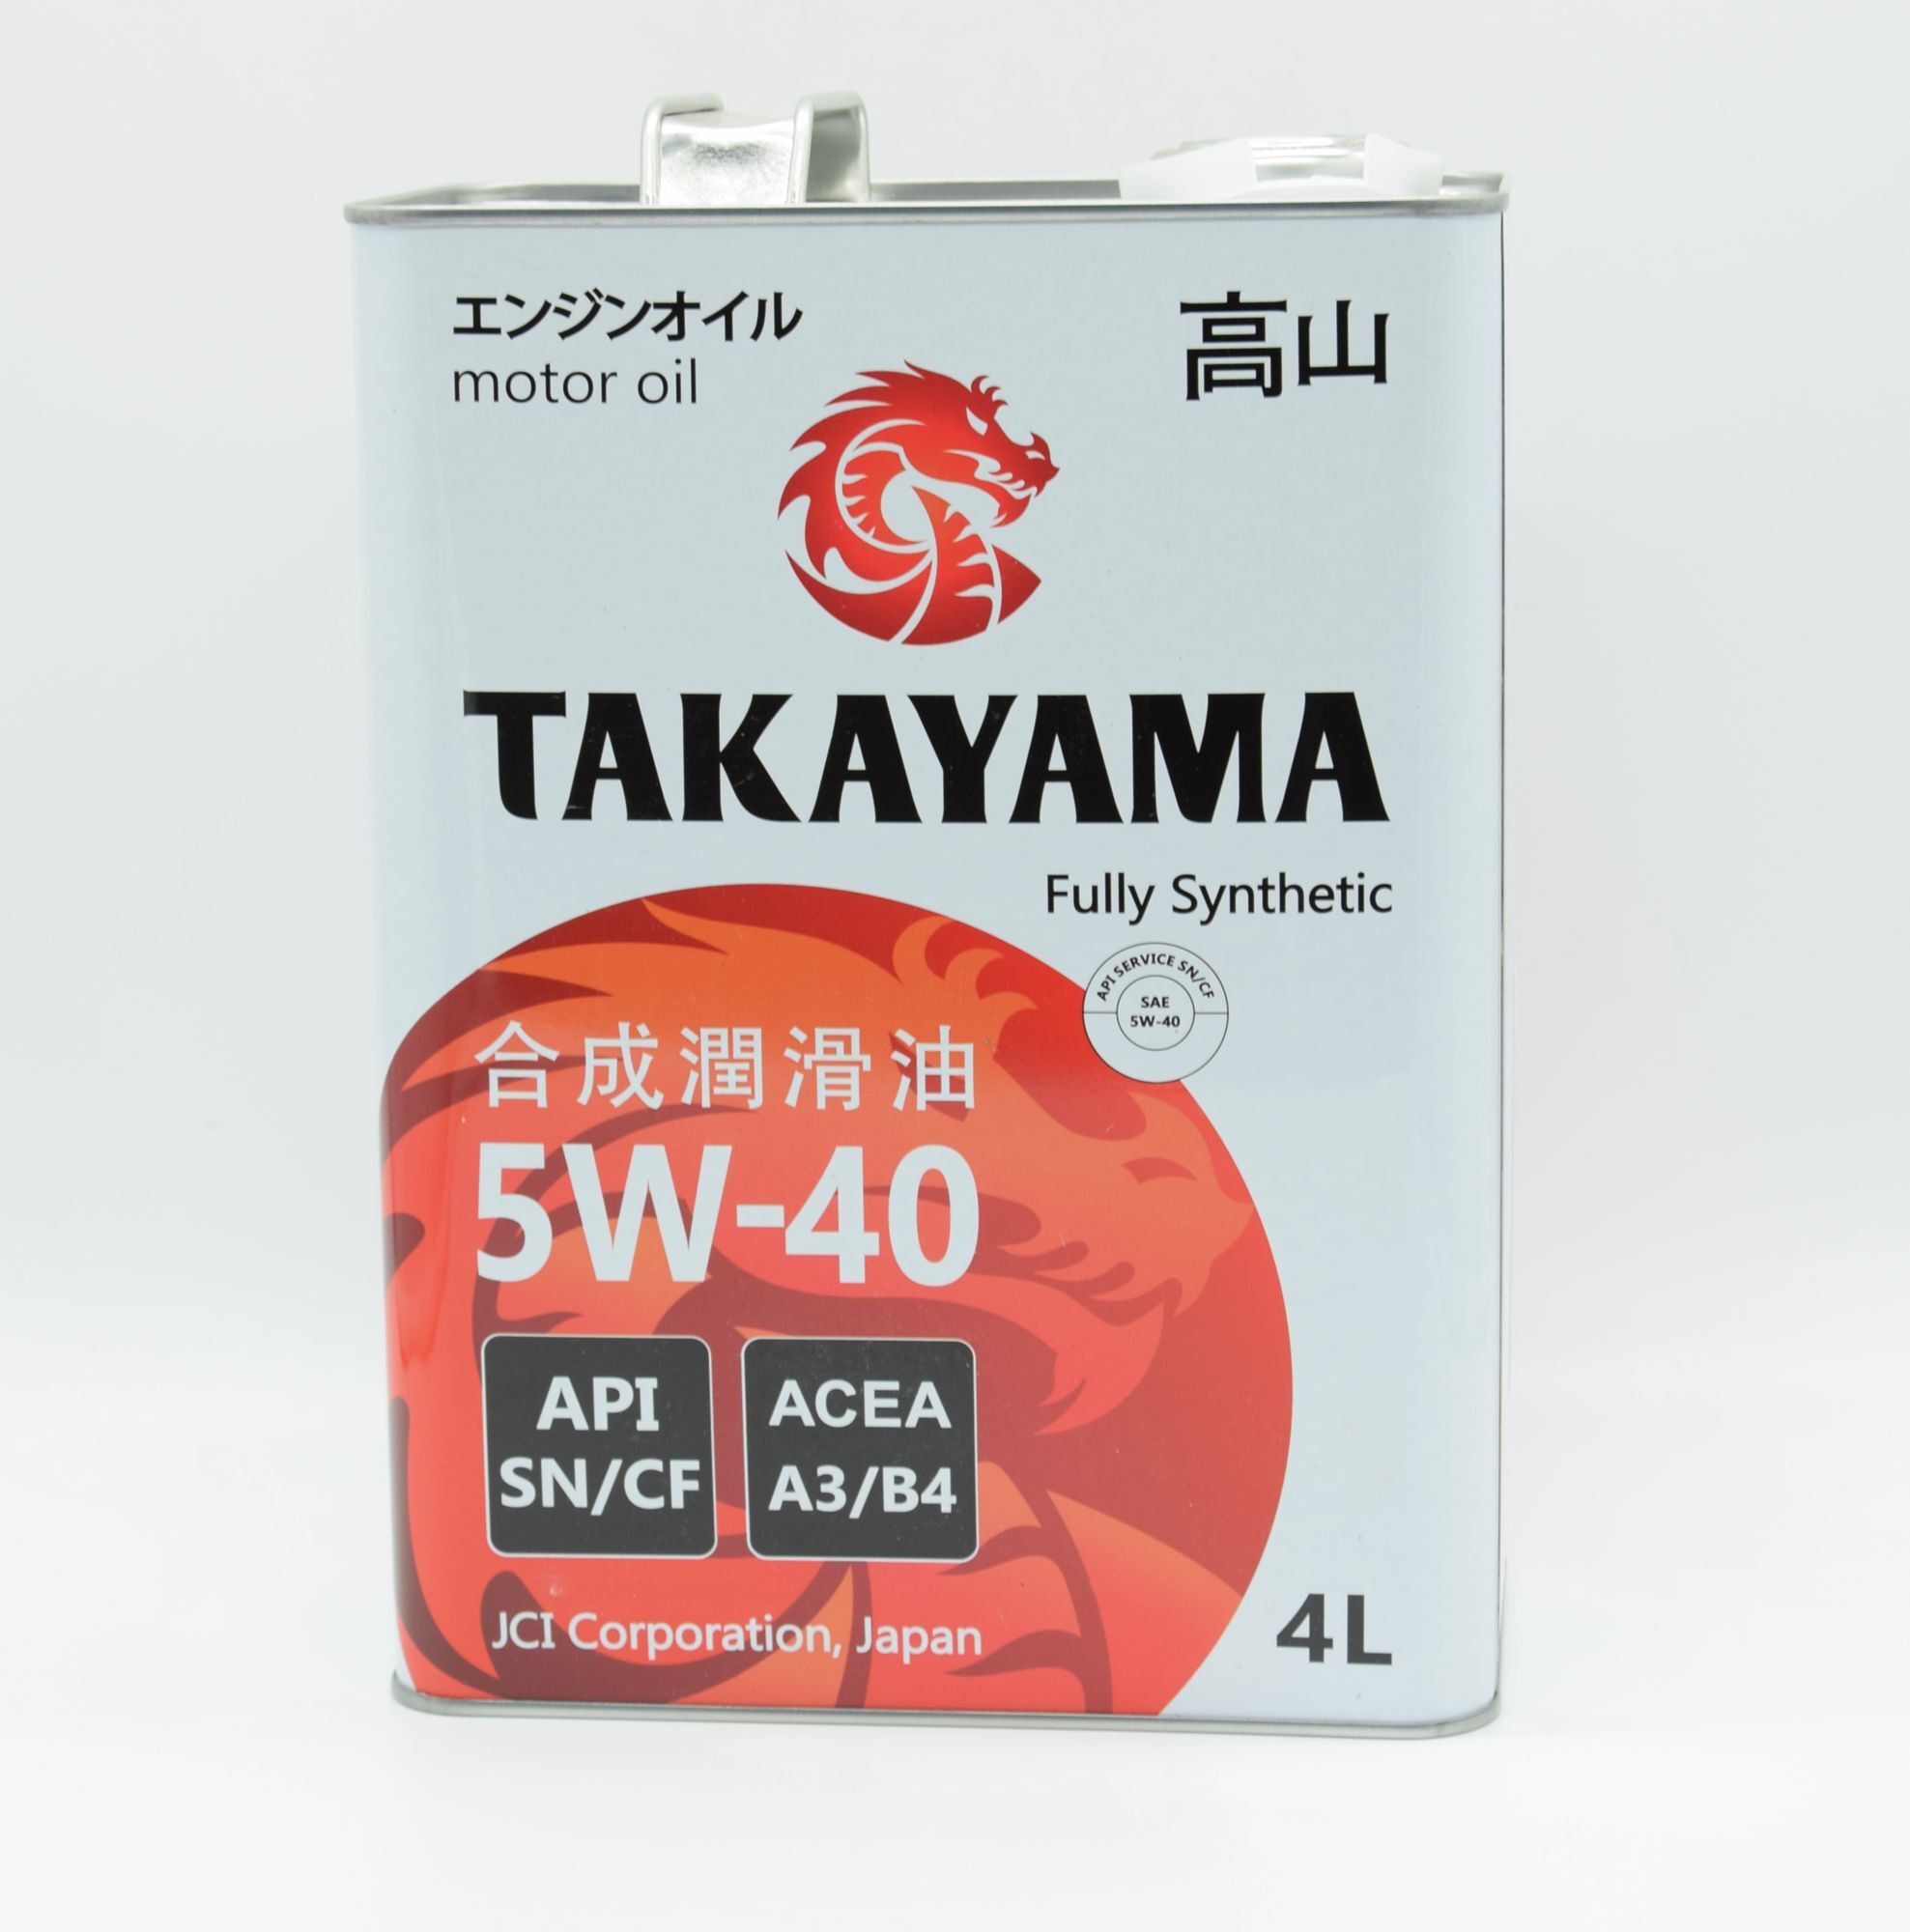 Моторное масло Takayama engine Oil SAE API SN/CF fully Synthetic 5w-40 синтетическое. Масло моторное 5w40 синтетика Такаяма отзывы покупателей. 4g69 SAE API. Масло моторное 5w40 синтетика Такаяма отзывы цена.